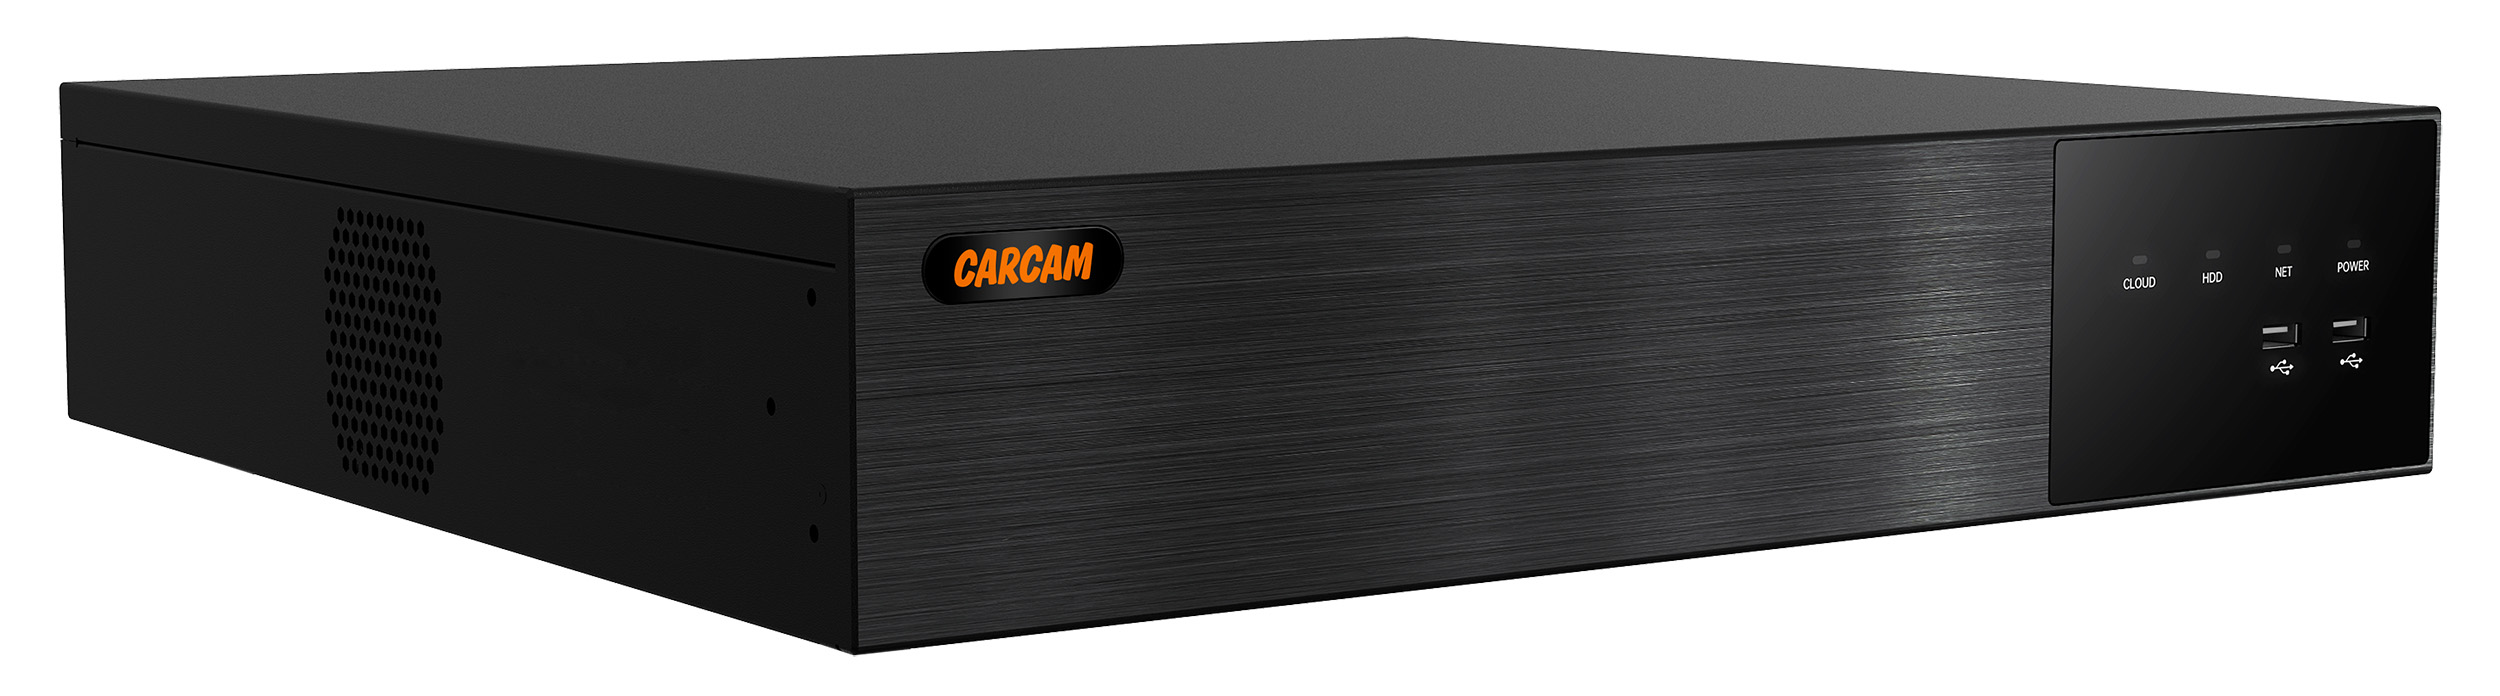 32-канальный IP-видеорегистратор CARCAM 32CH NVR 8732 16 канальный гибридный видеорегистратор carcam 16ch xvr 8716